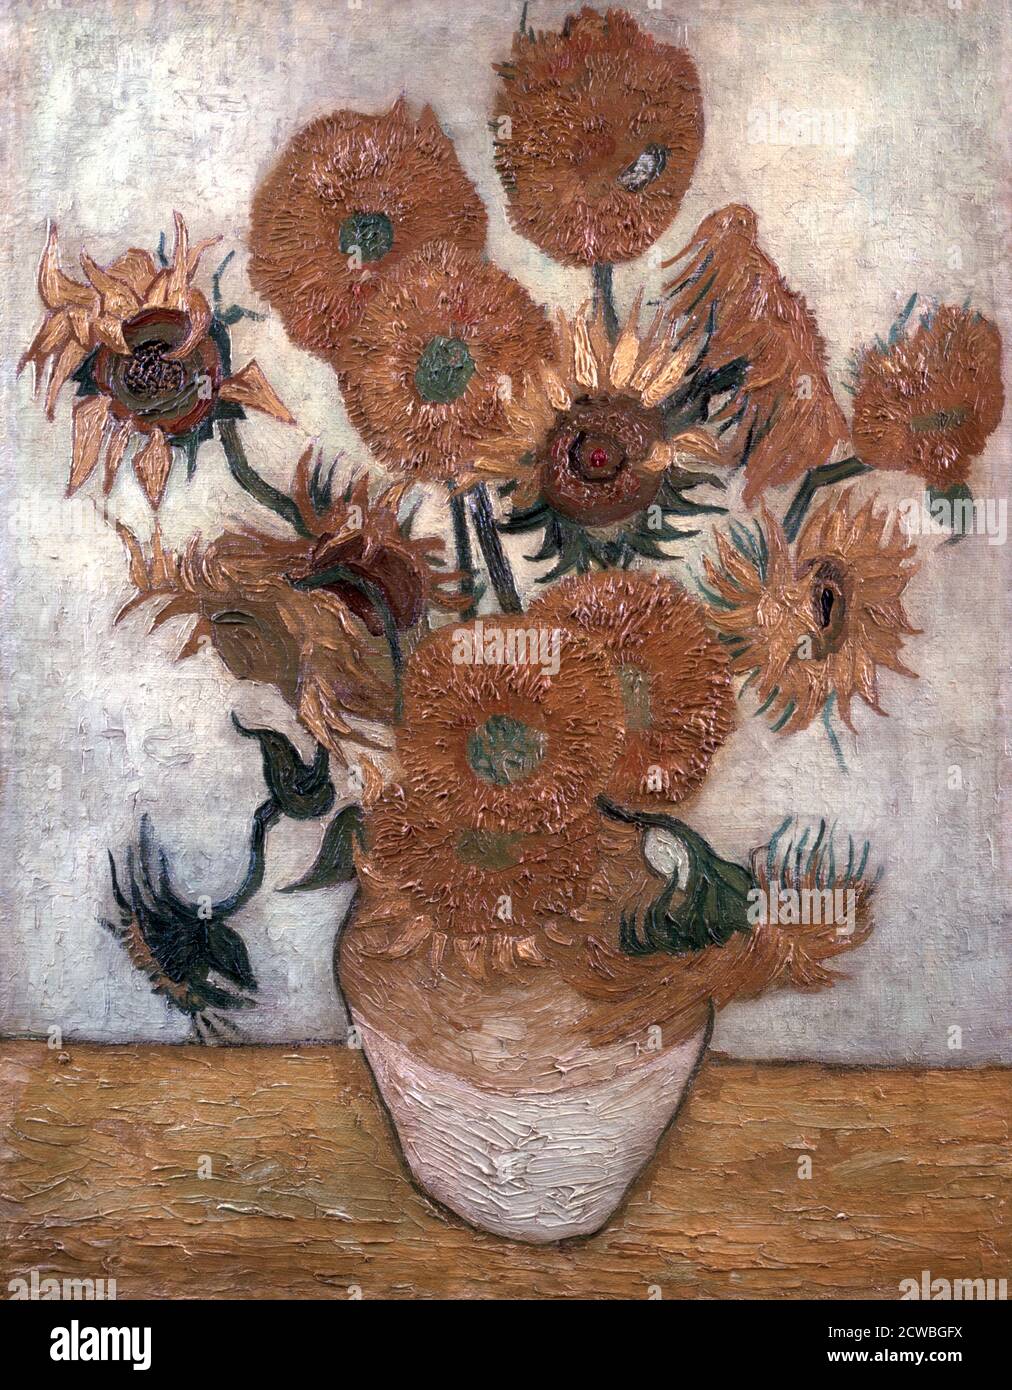 Girasoli' di vincent van gogh, 1889. Uno dei quattro dipinti di girasoli di Vincent van Gogh. Dalla collezione del Museo d'Arte Yasuda Kasai, Tokyo, Giappone. Foto Stock